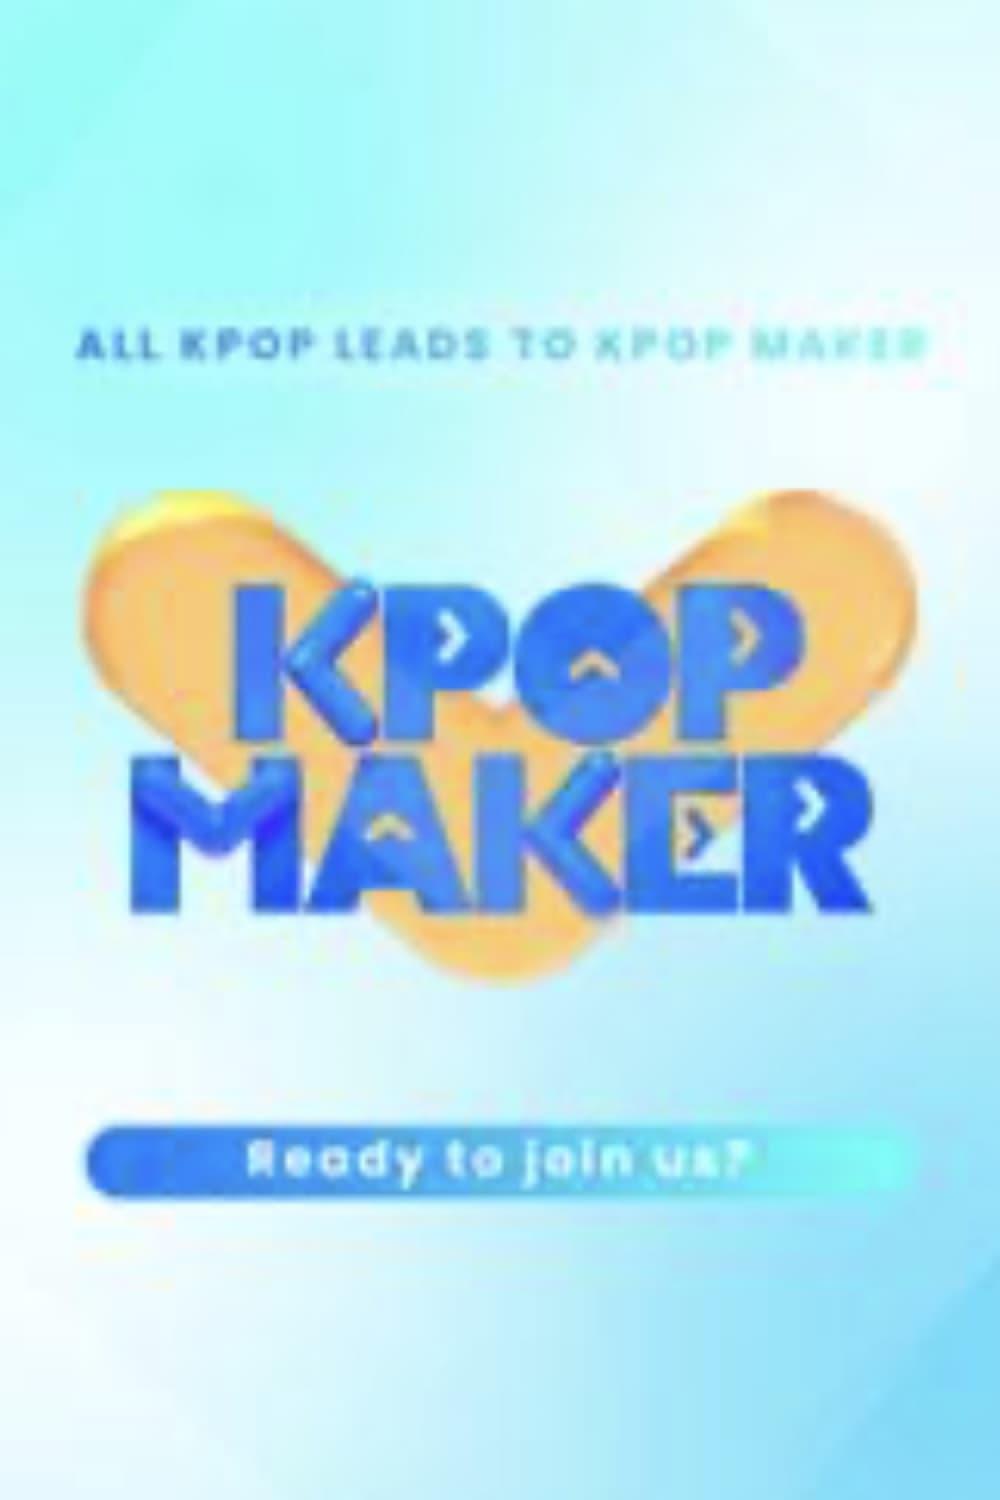 TV ratings for K-Pop Maker (케이팝 메이커) in Portugal. Mnet Plus TV series